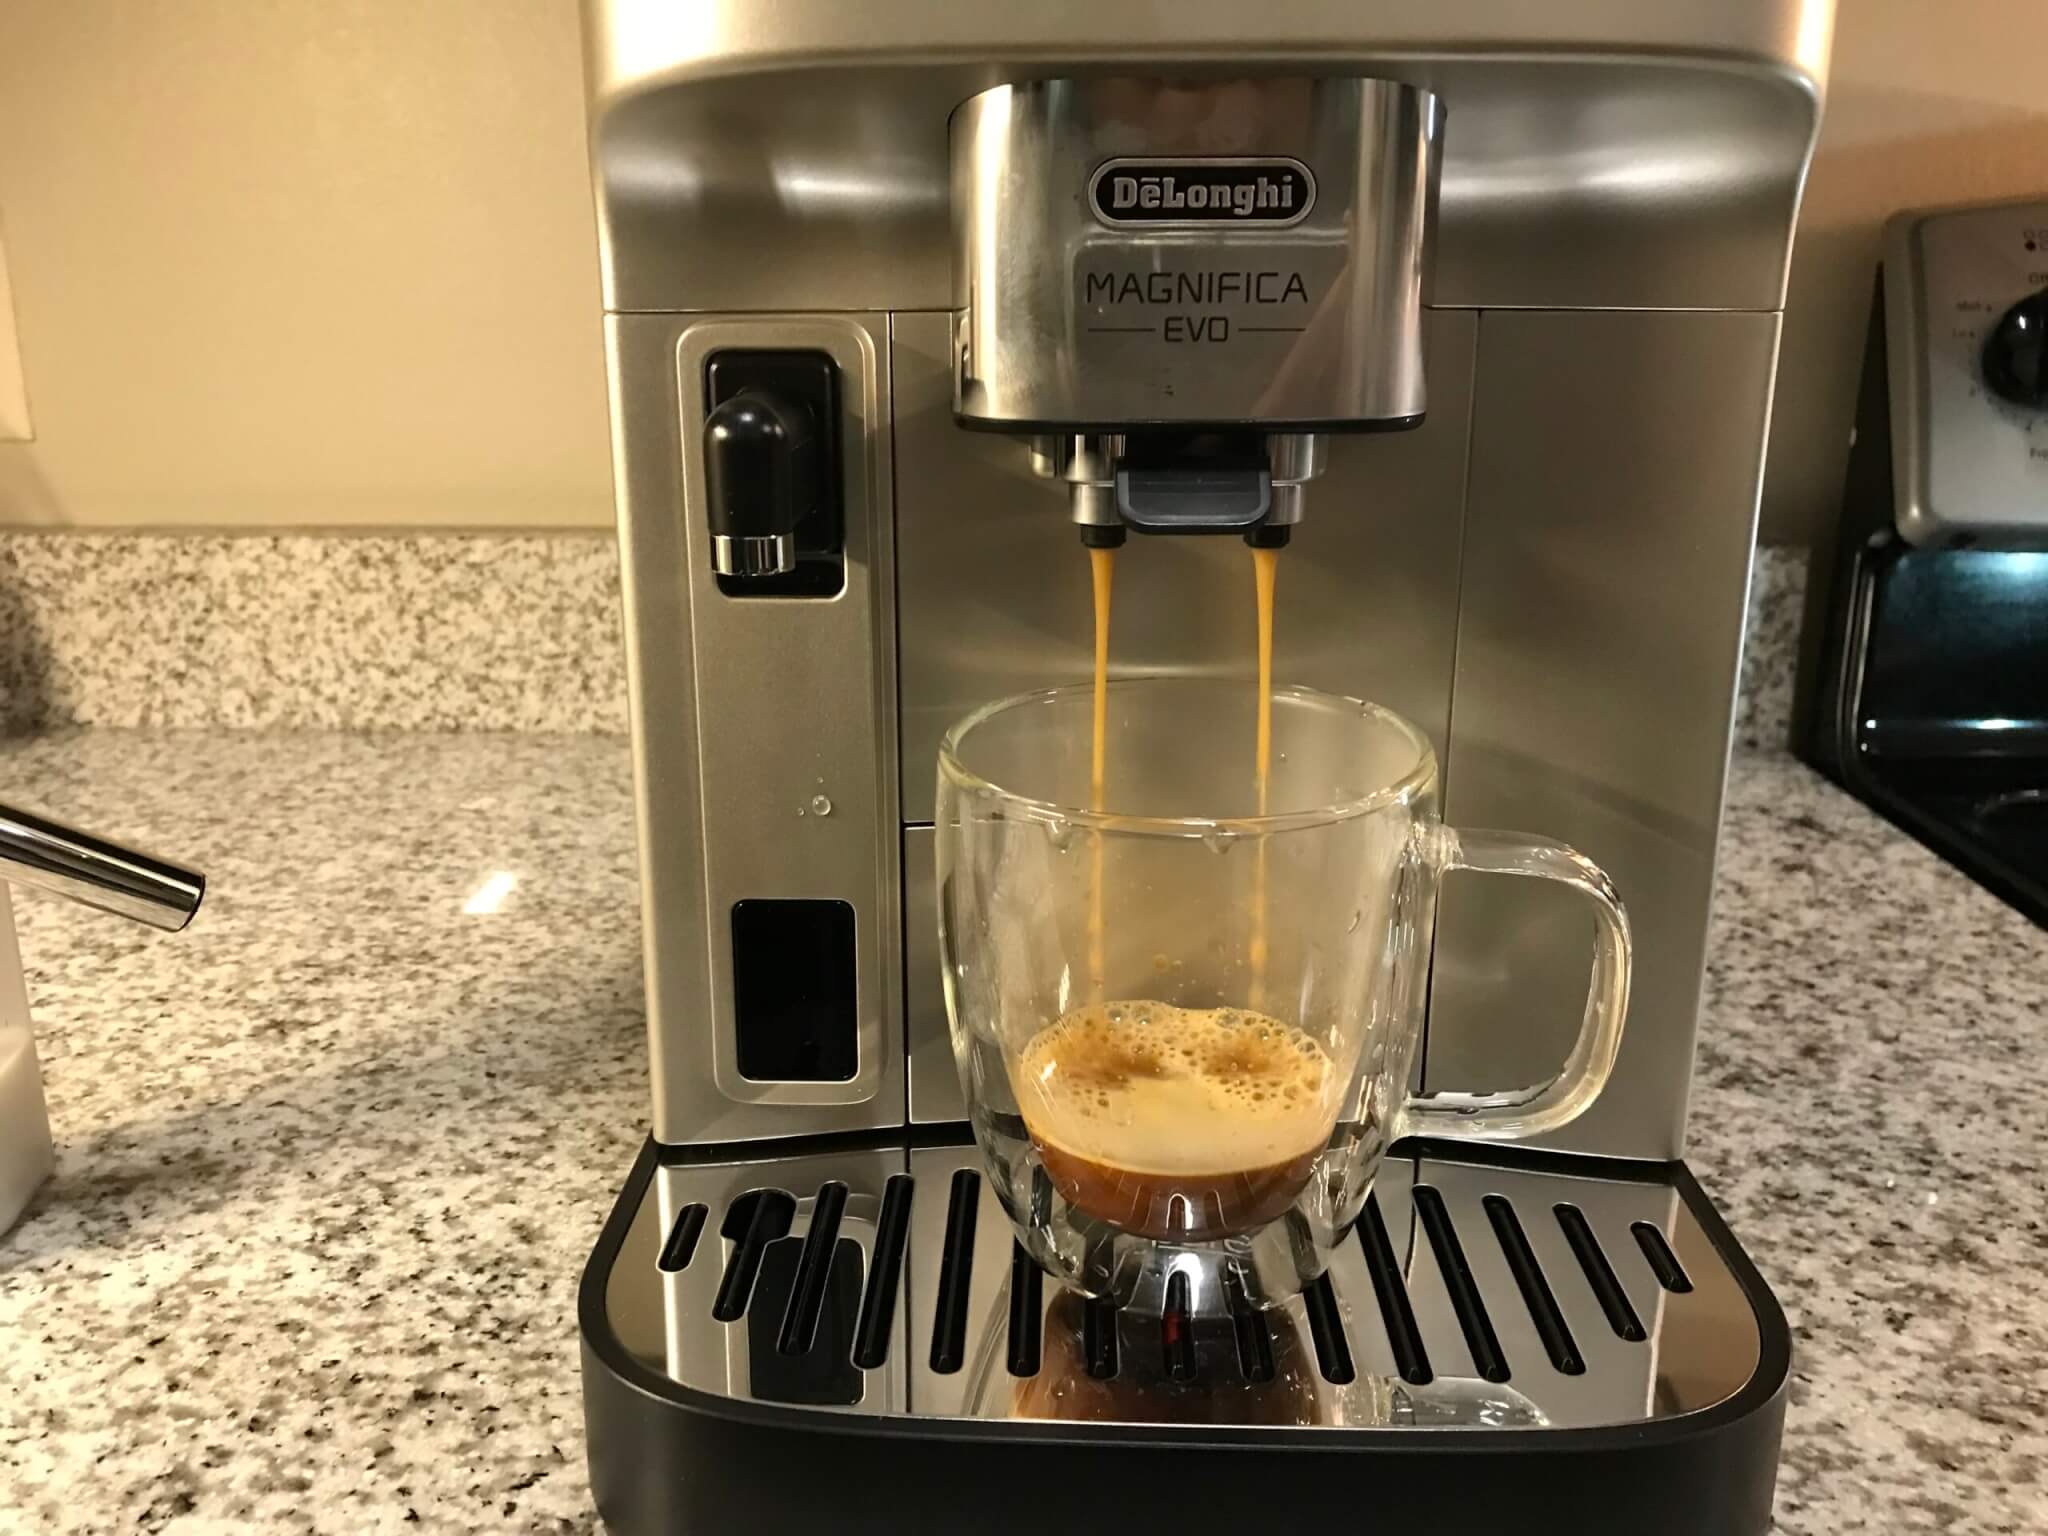 De’Longhi Magnifica Evo Espresso Machine brewing a hot cup. 